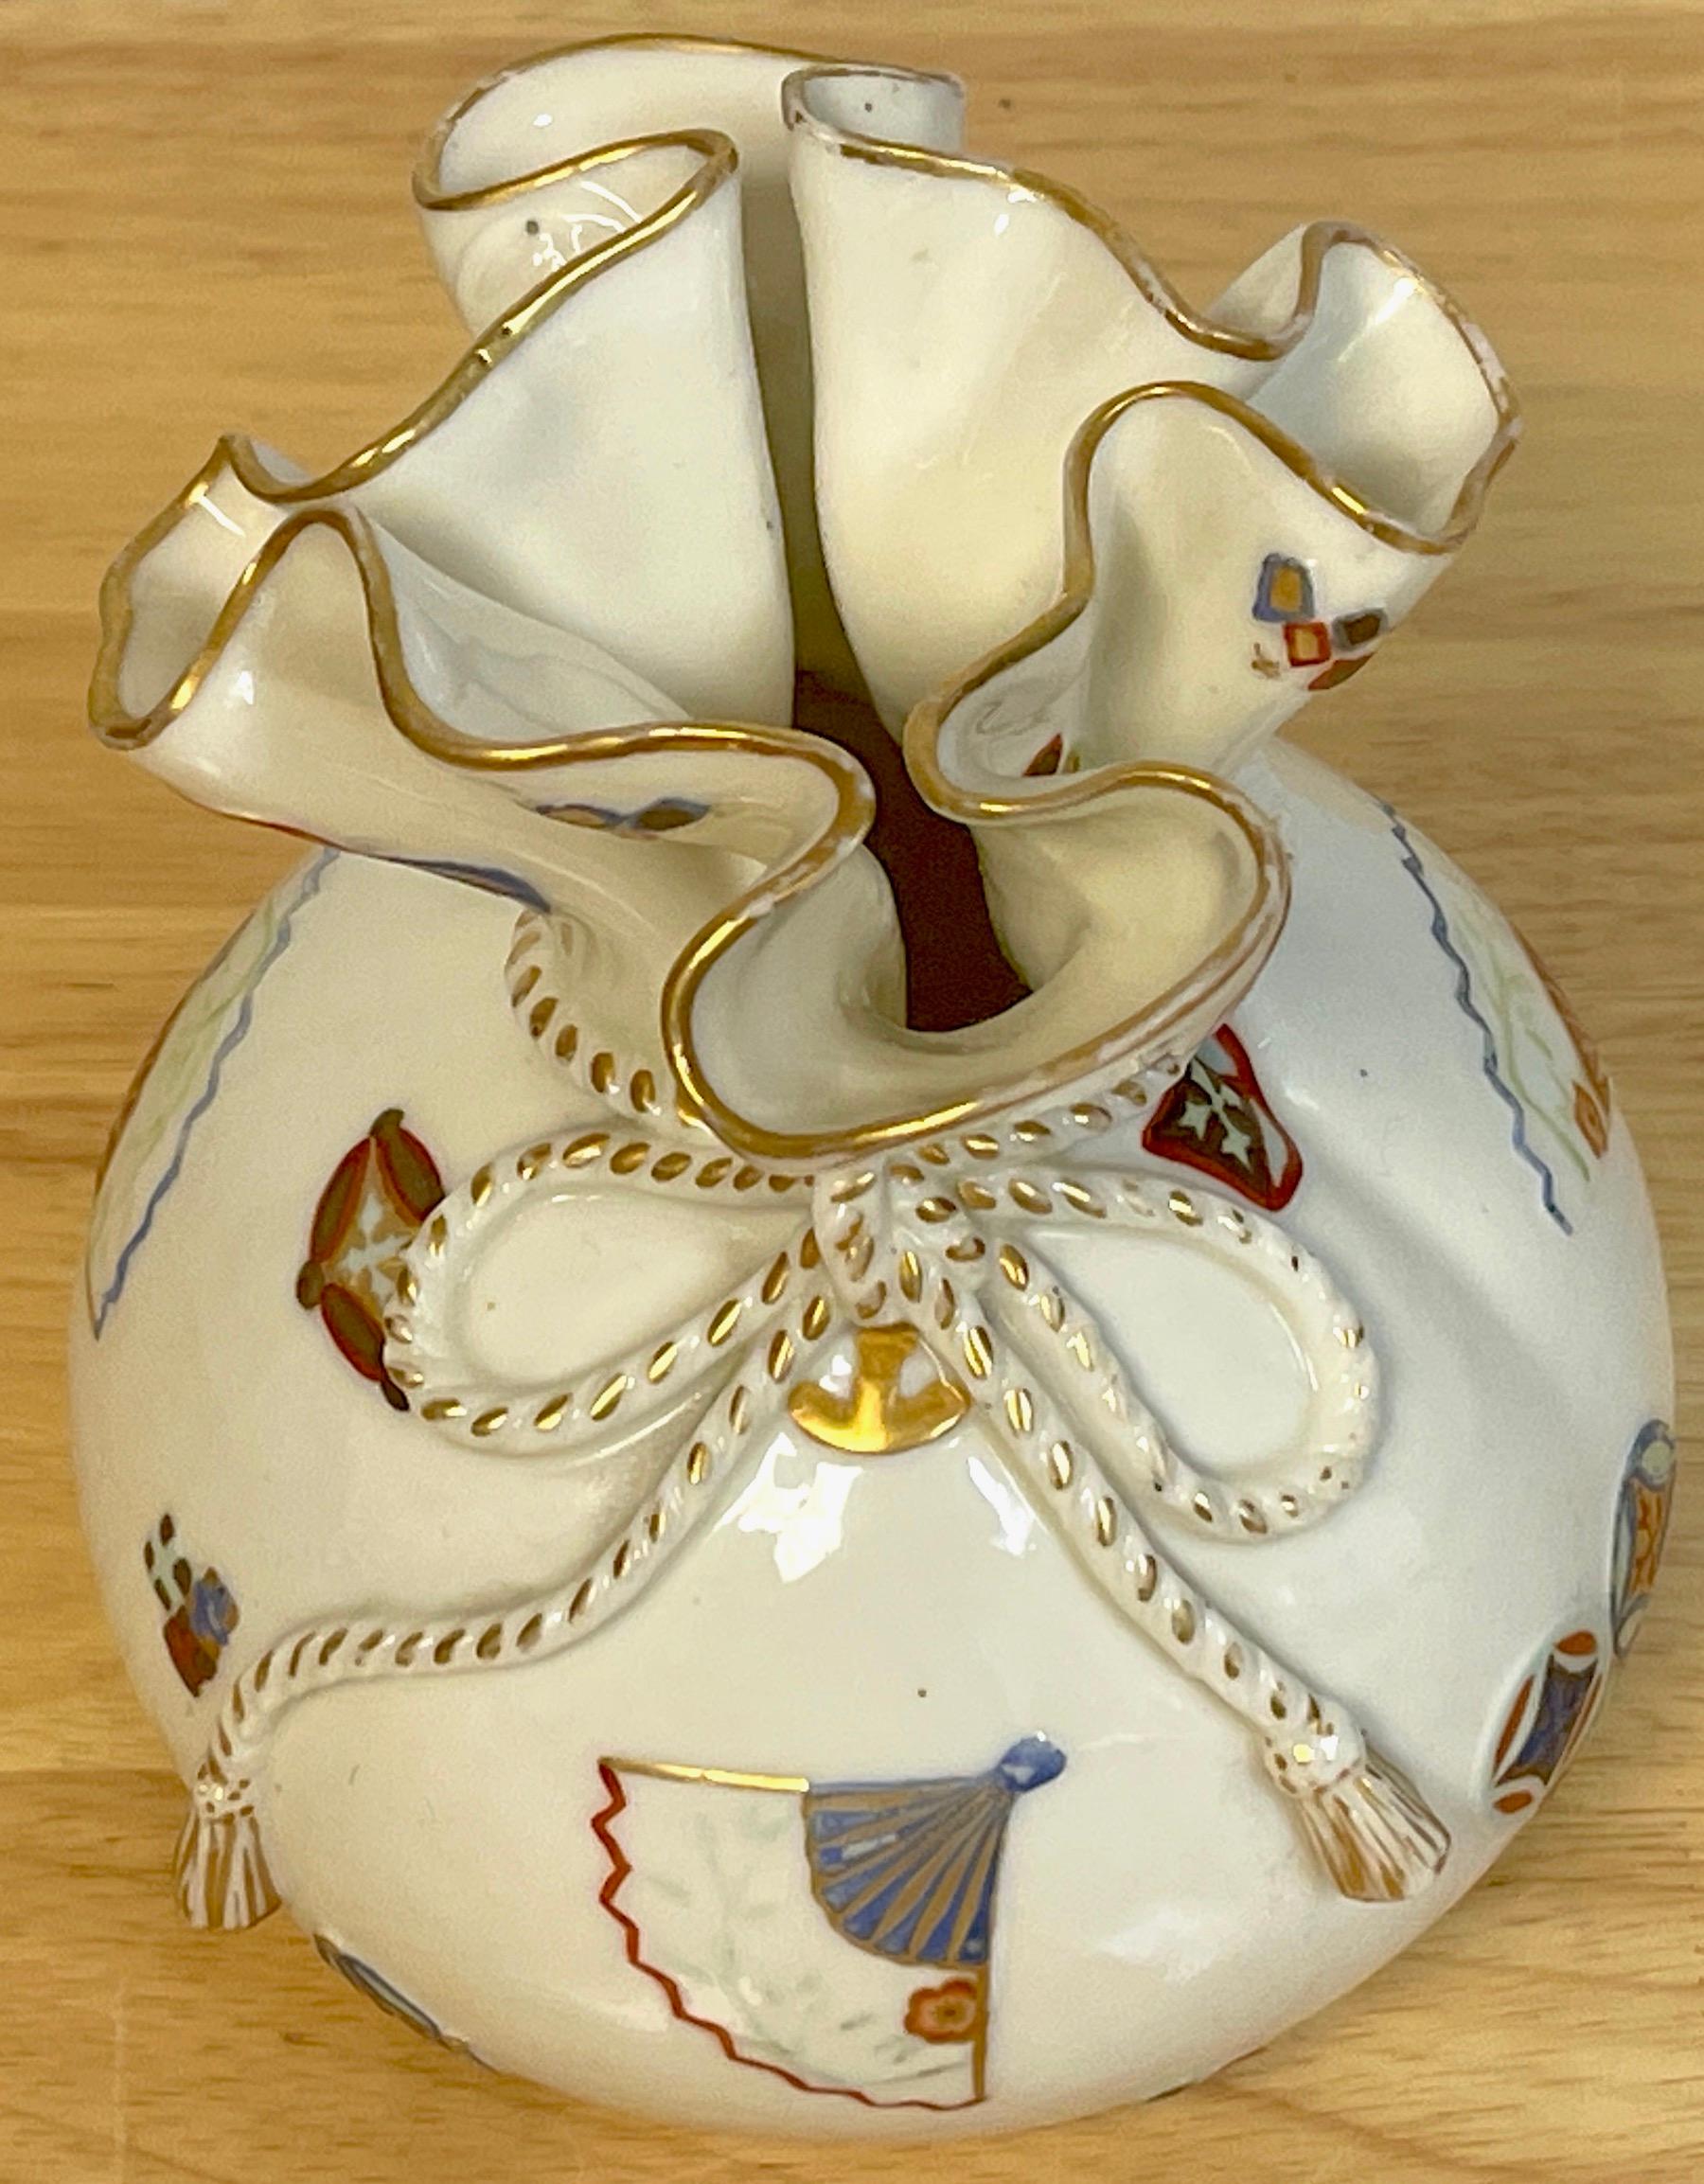 Vase mouchoir Royal Worcester Aesthetic / Japonisme, 1876
Un bel exemple du mouvement esthétique anglais, modelé de manière réaliste, peu décoré et moulé avec des objets et des symboles précieux. Dessus ébouriffé de 4 pouces de diamètre avec une